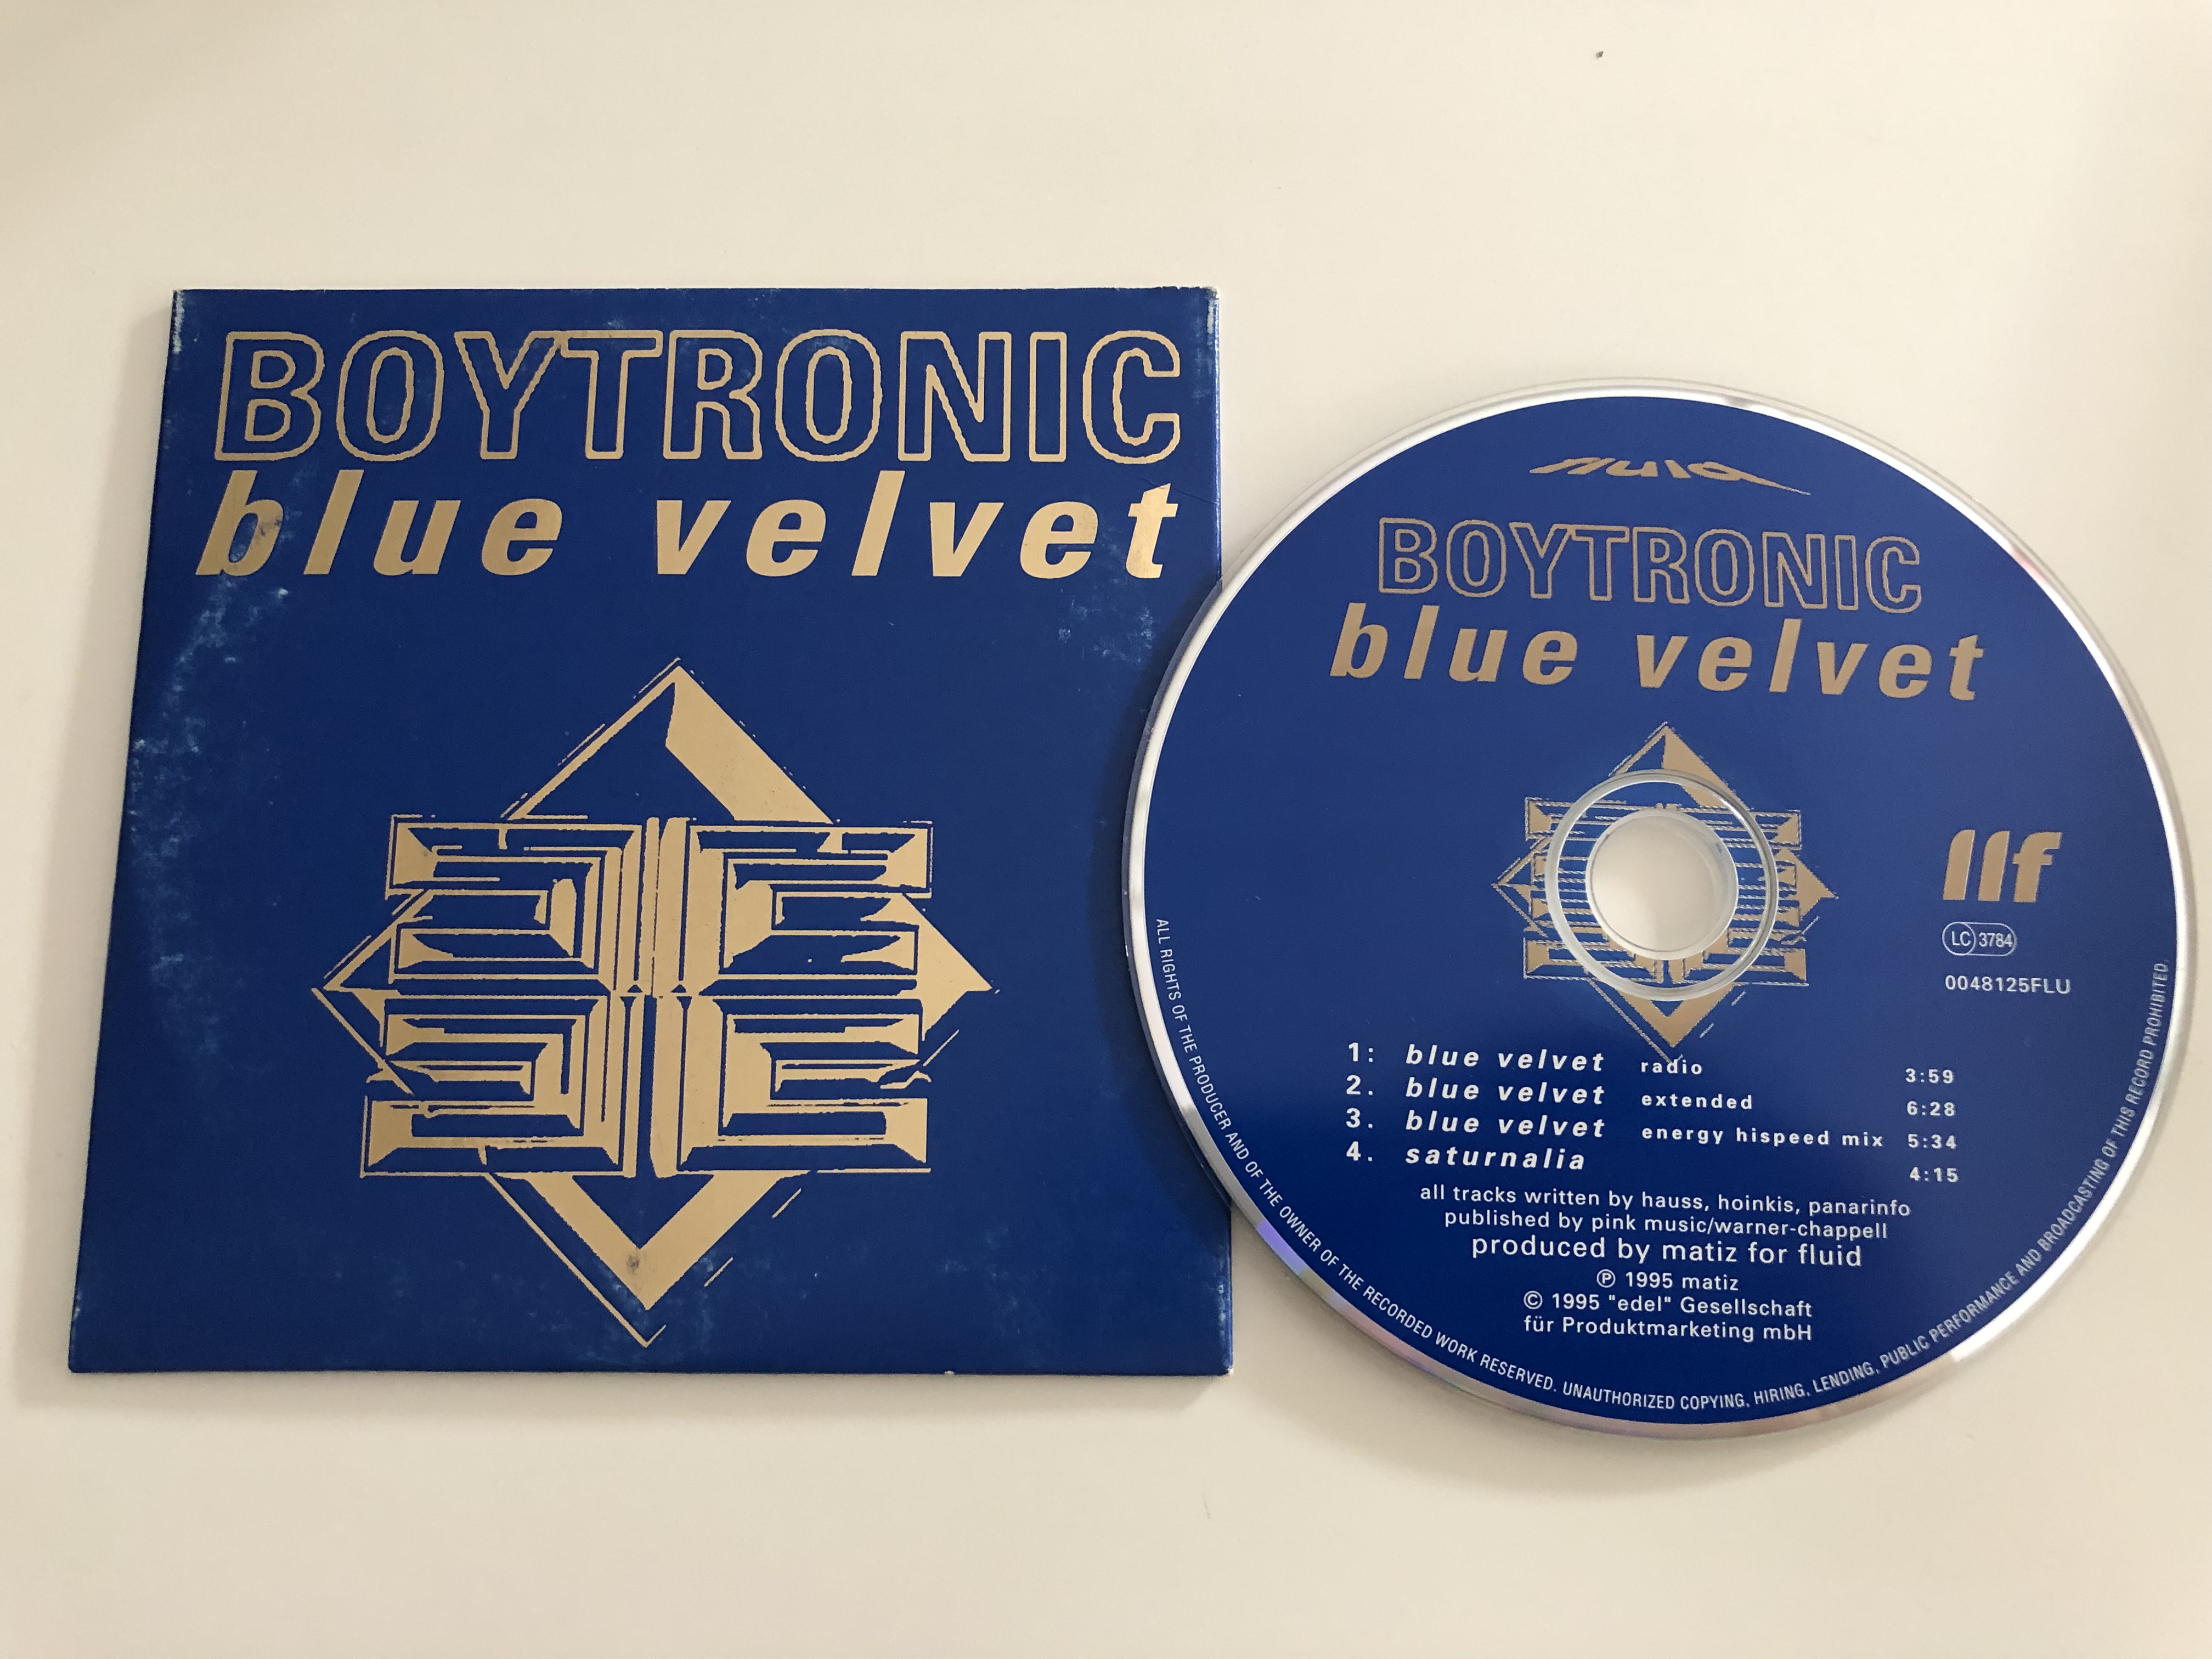 boytronic-blue-velvet-cd-0048125-flu-audio-cd-1995-1-.jpg